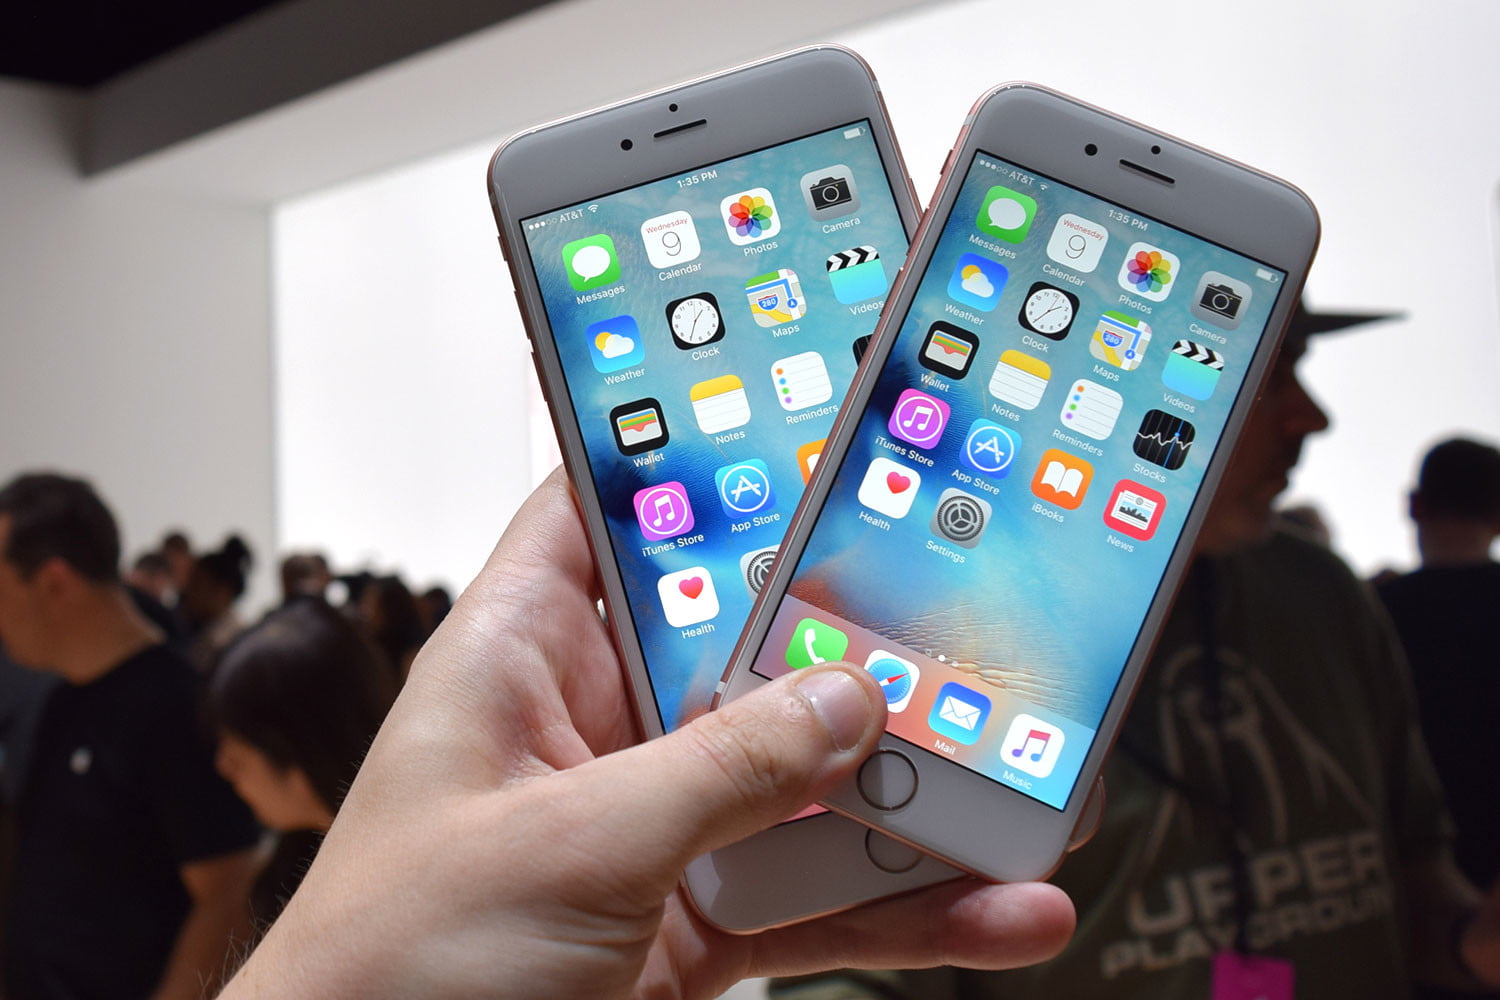 Apple obiecuje naprawić zepsuty iPhone 6s i iPhone 6s Plus za darmo